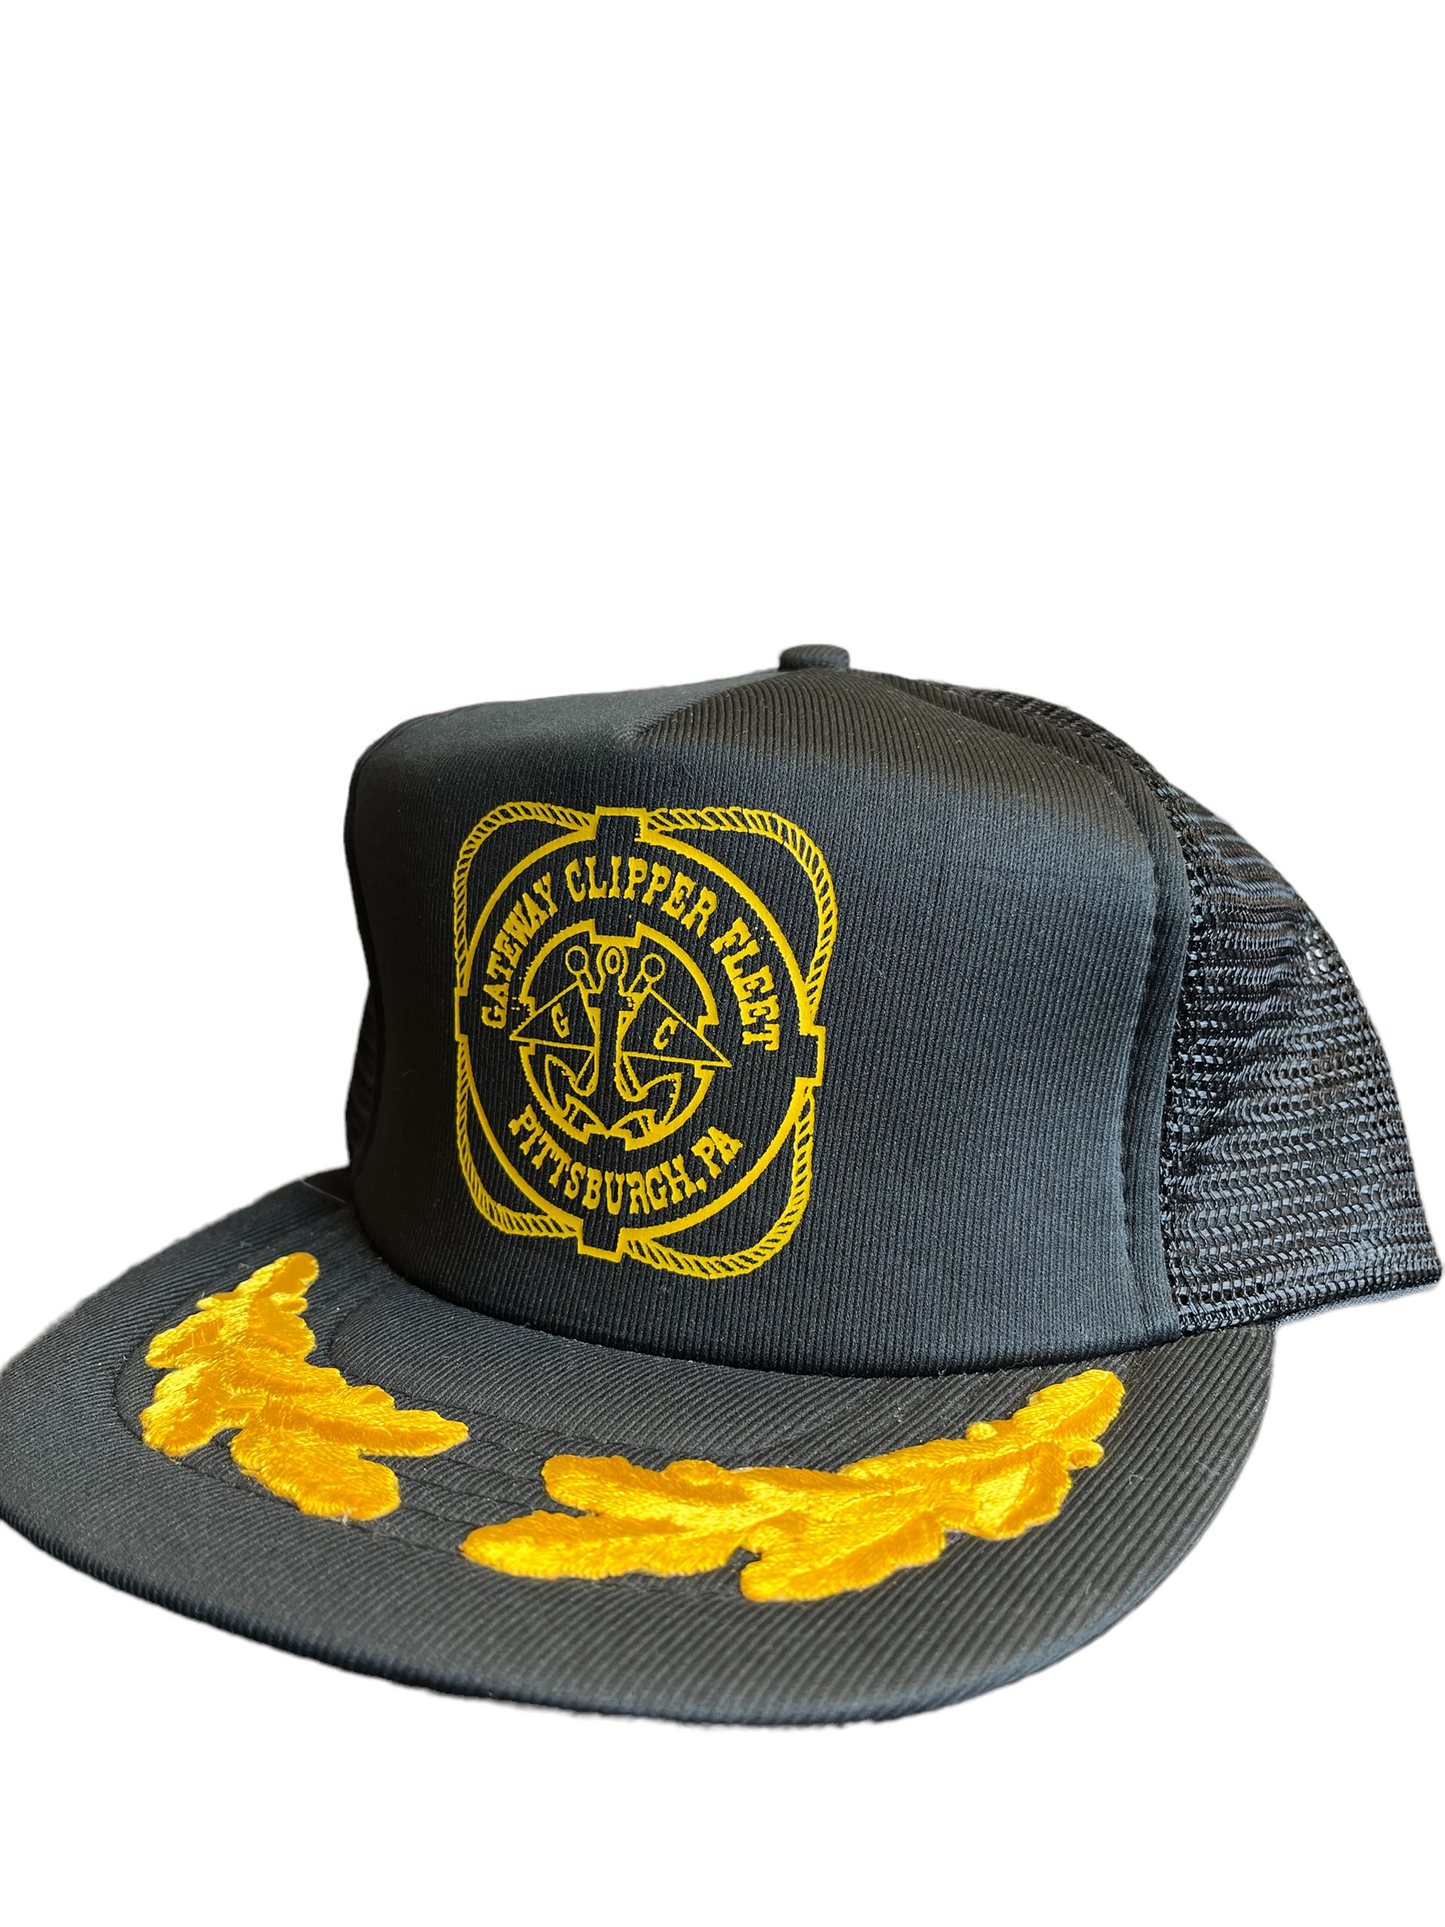 Vintage Pittsburgh Gateway Clipper Trucker Hat